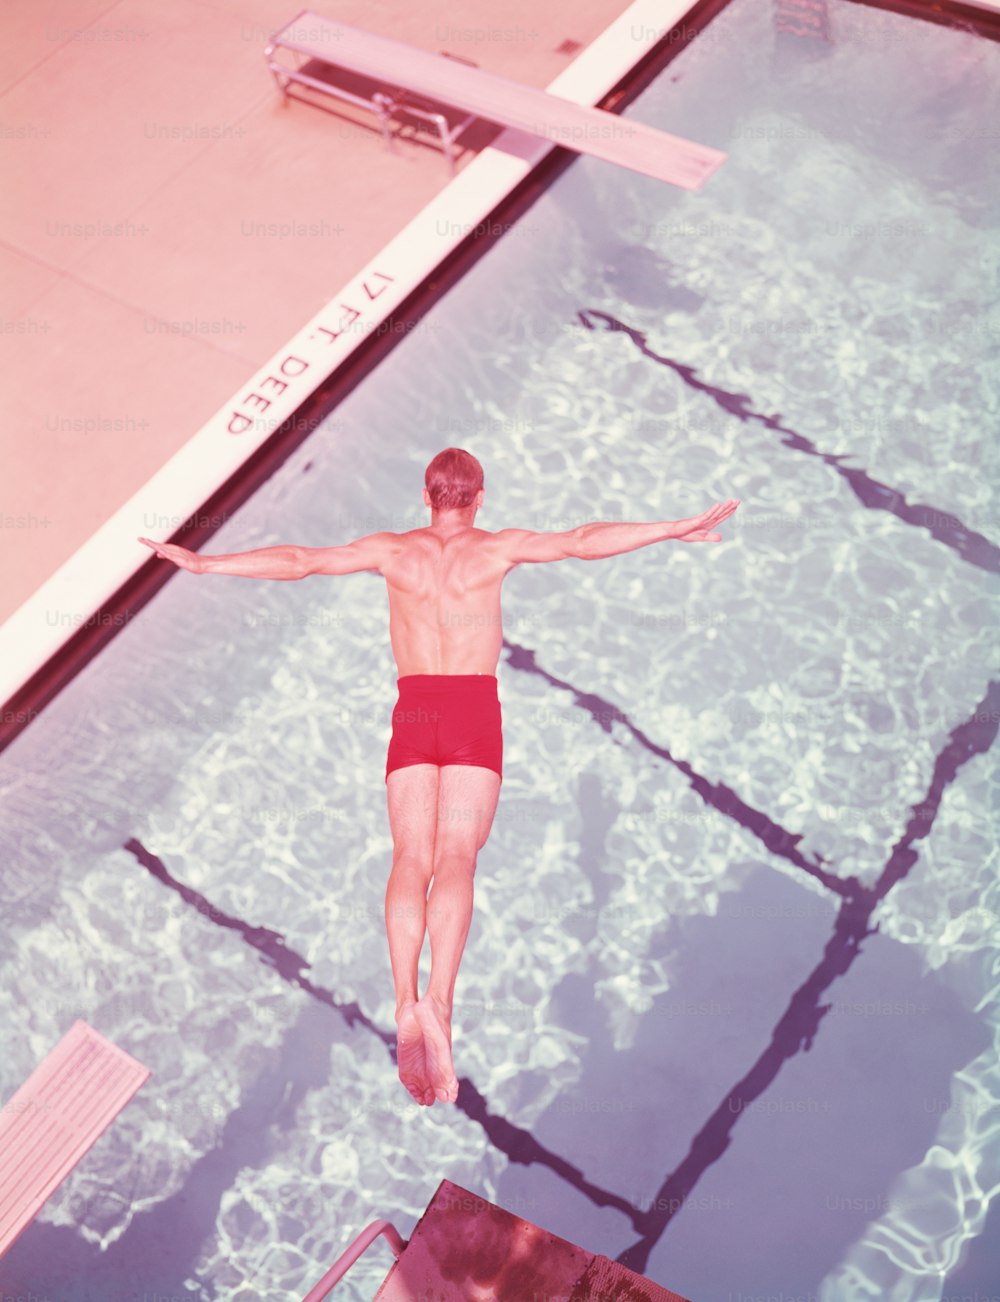 ESTADOS UNIDOS - POR VOLTA DE 1950: Homem mergulhando na piscina, vista aérea.